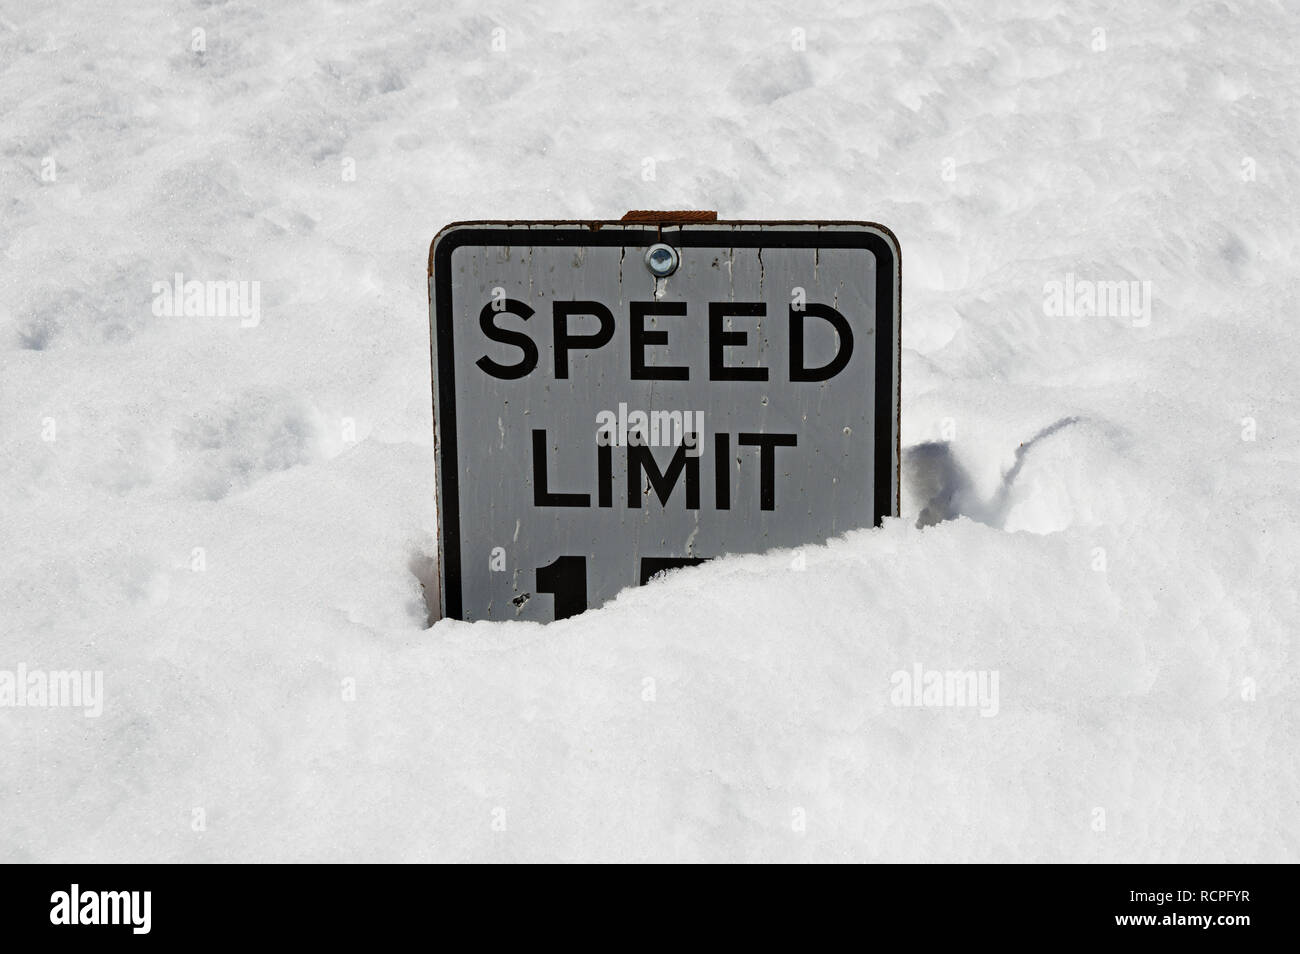 Límite de velocidad 15 signo antiguo medio enterrado en la nieve profunda Foto de stock